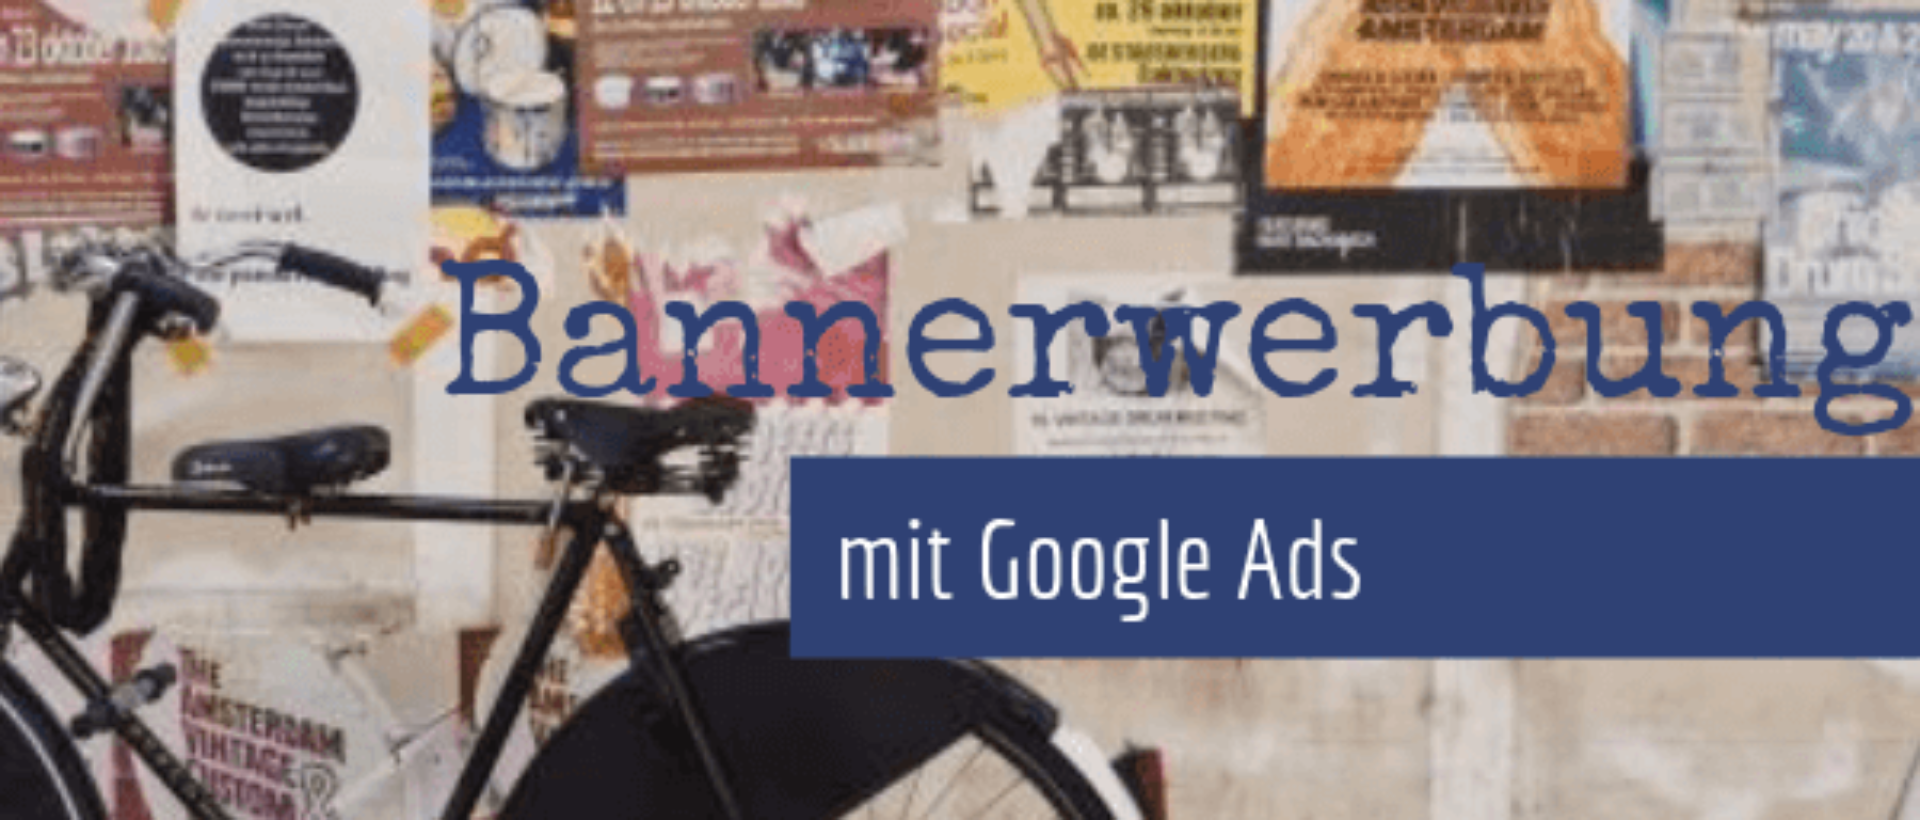 Bannerwerbung mit Google Ads